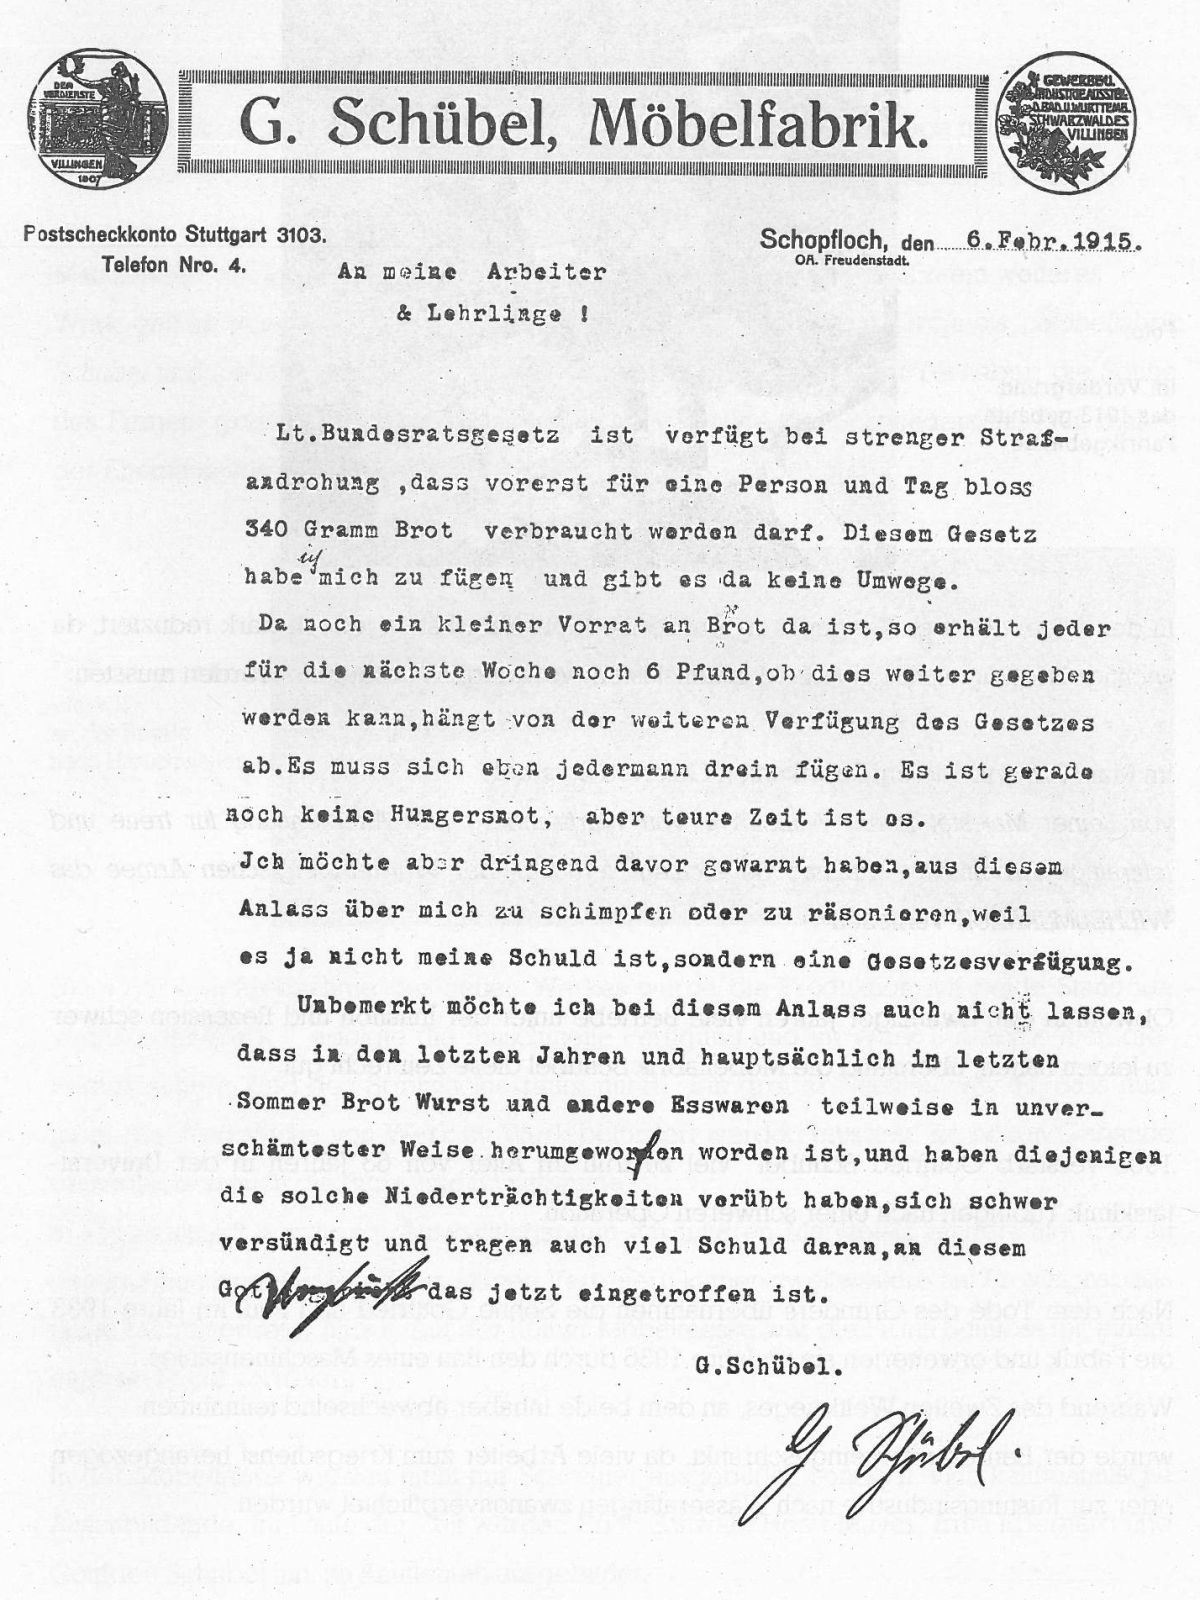  Schopflocher Skizzen Brief von Herrn Schübel - Bild wird mit einem Klick vergrößert 